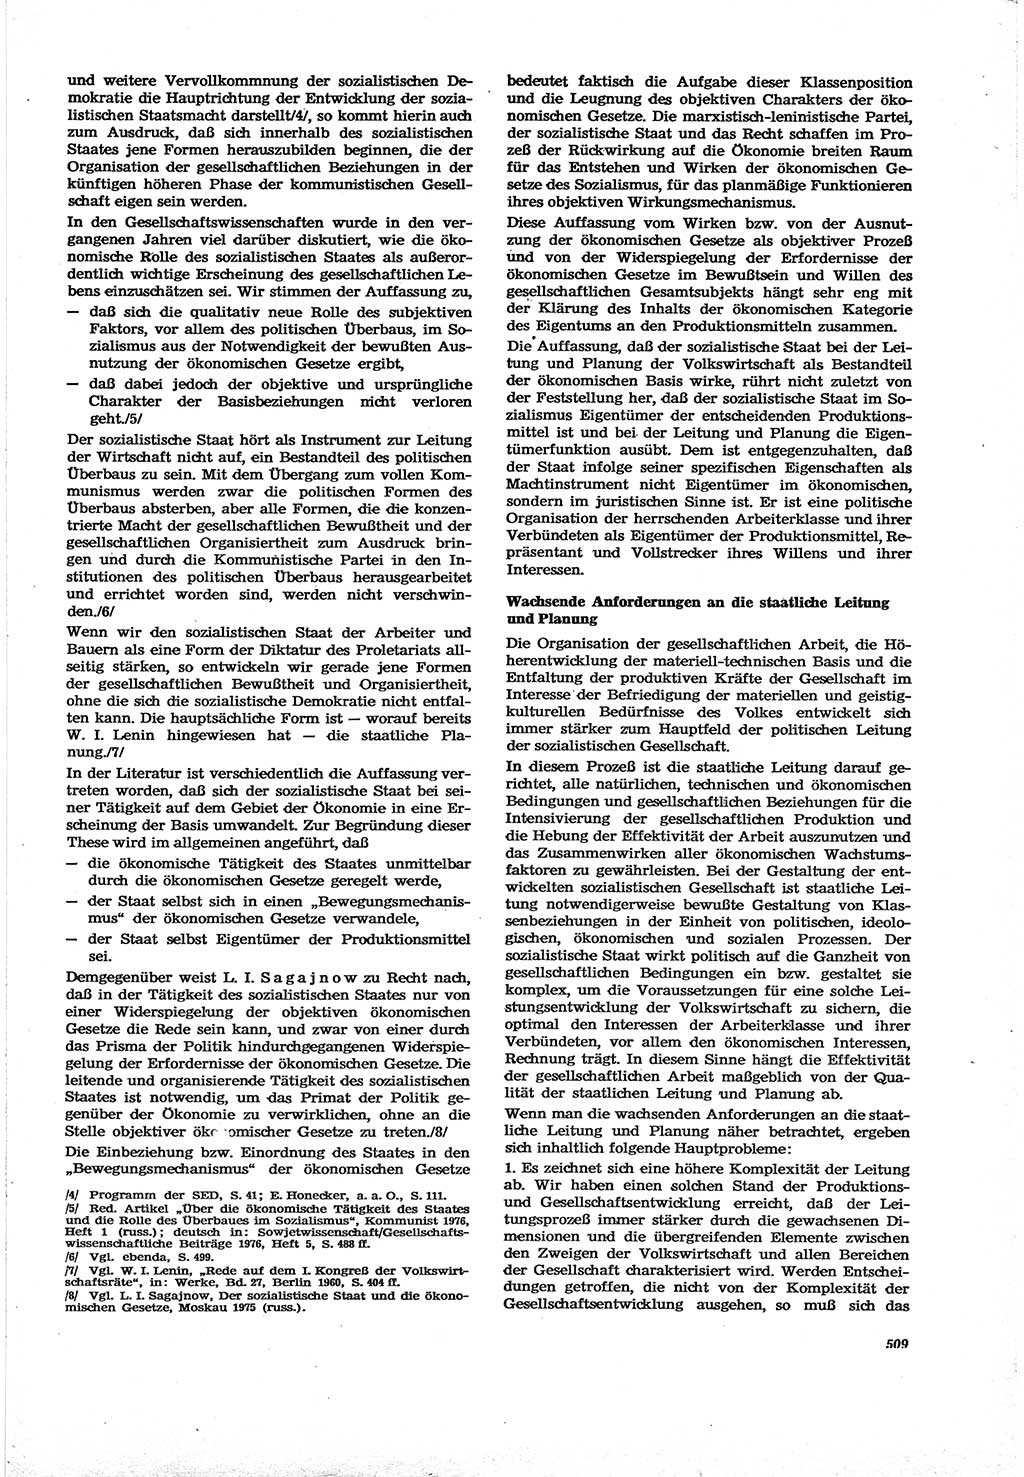 Neue Justiz (NJ), Zeitschrift für Recht und Rechtswissenschaft [Deutsche Demokratische Republik (DDR)], 30. Jahrgang 1976, Seite 509 (NJ DDR 1976, S. 509)